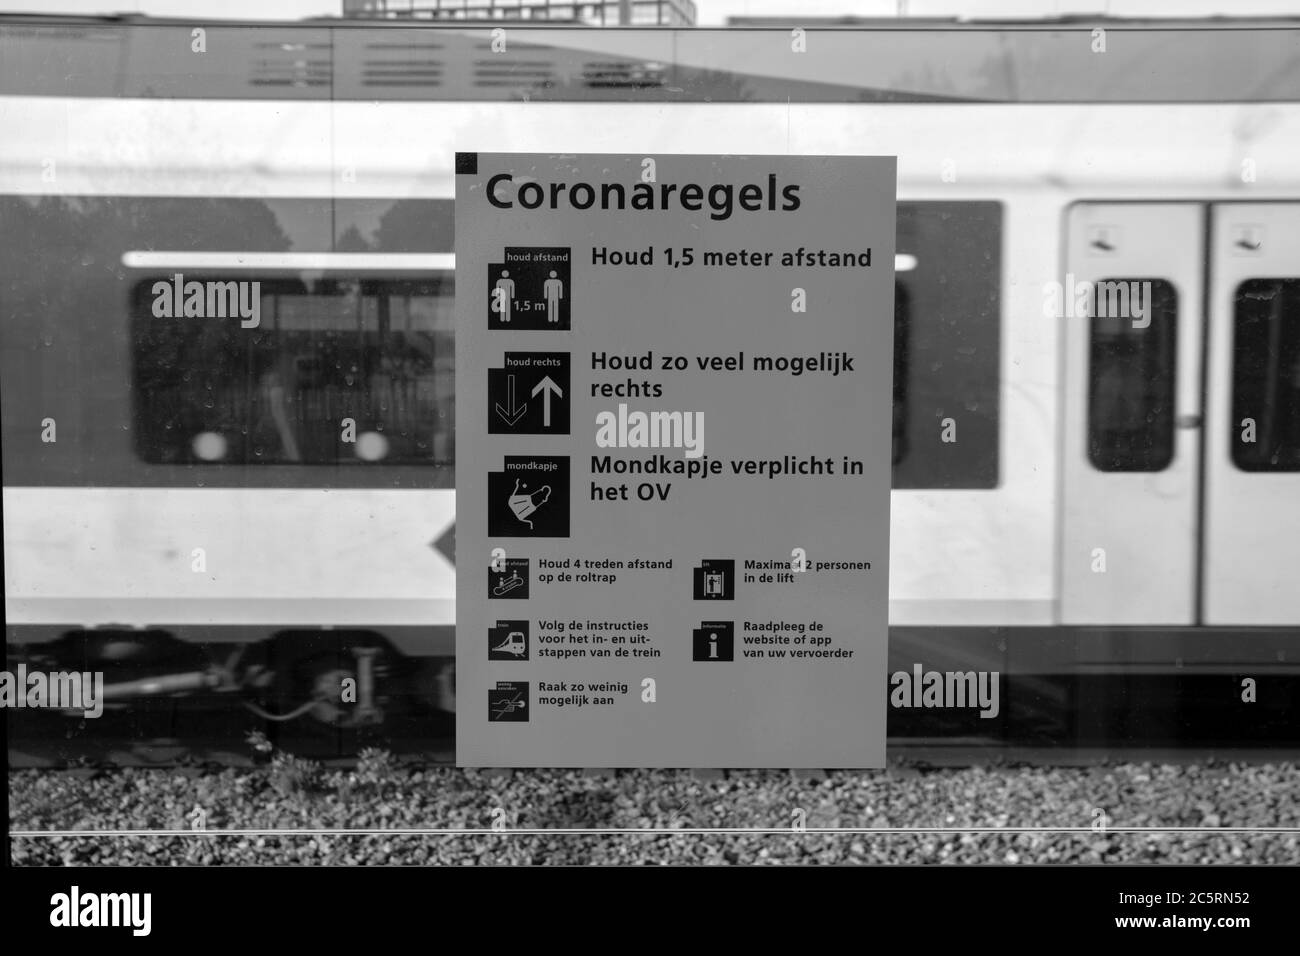 Etiqueta Reglas de Corona en una estación de tren en Amsterdam 31-5-2020 Foto de stock